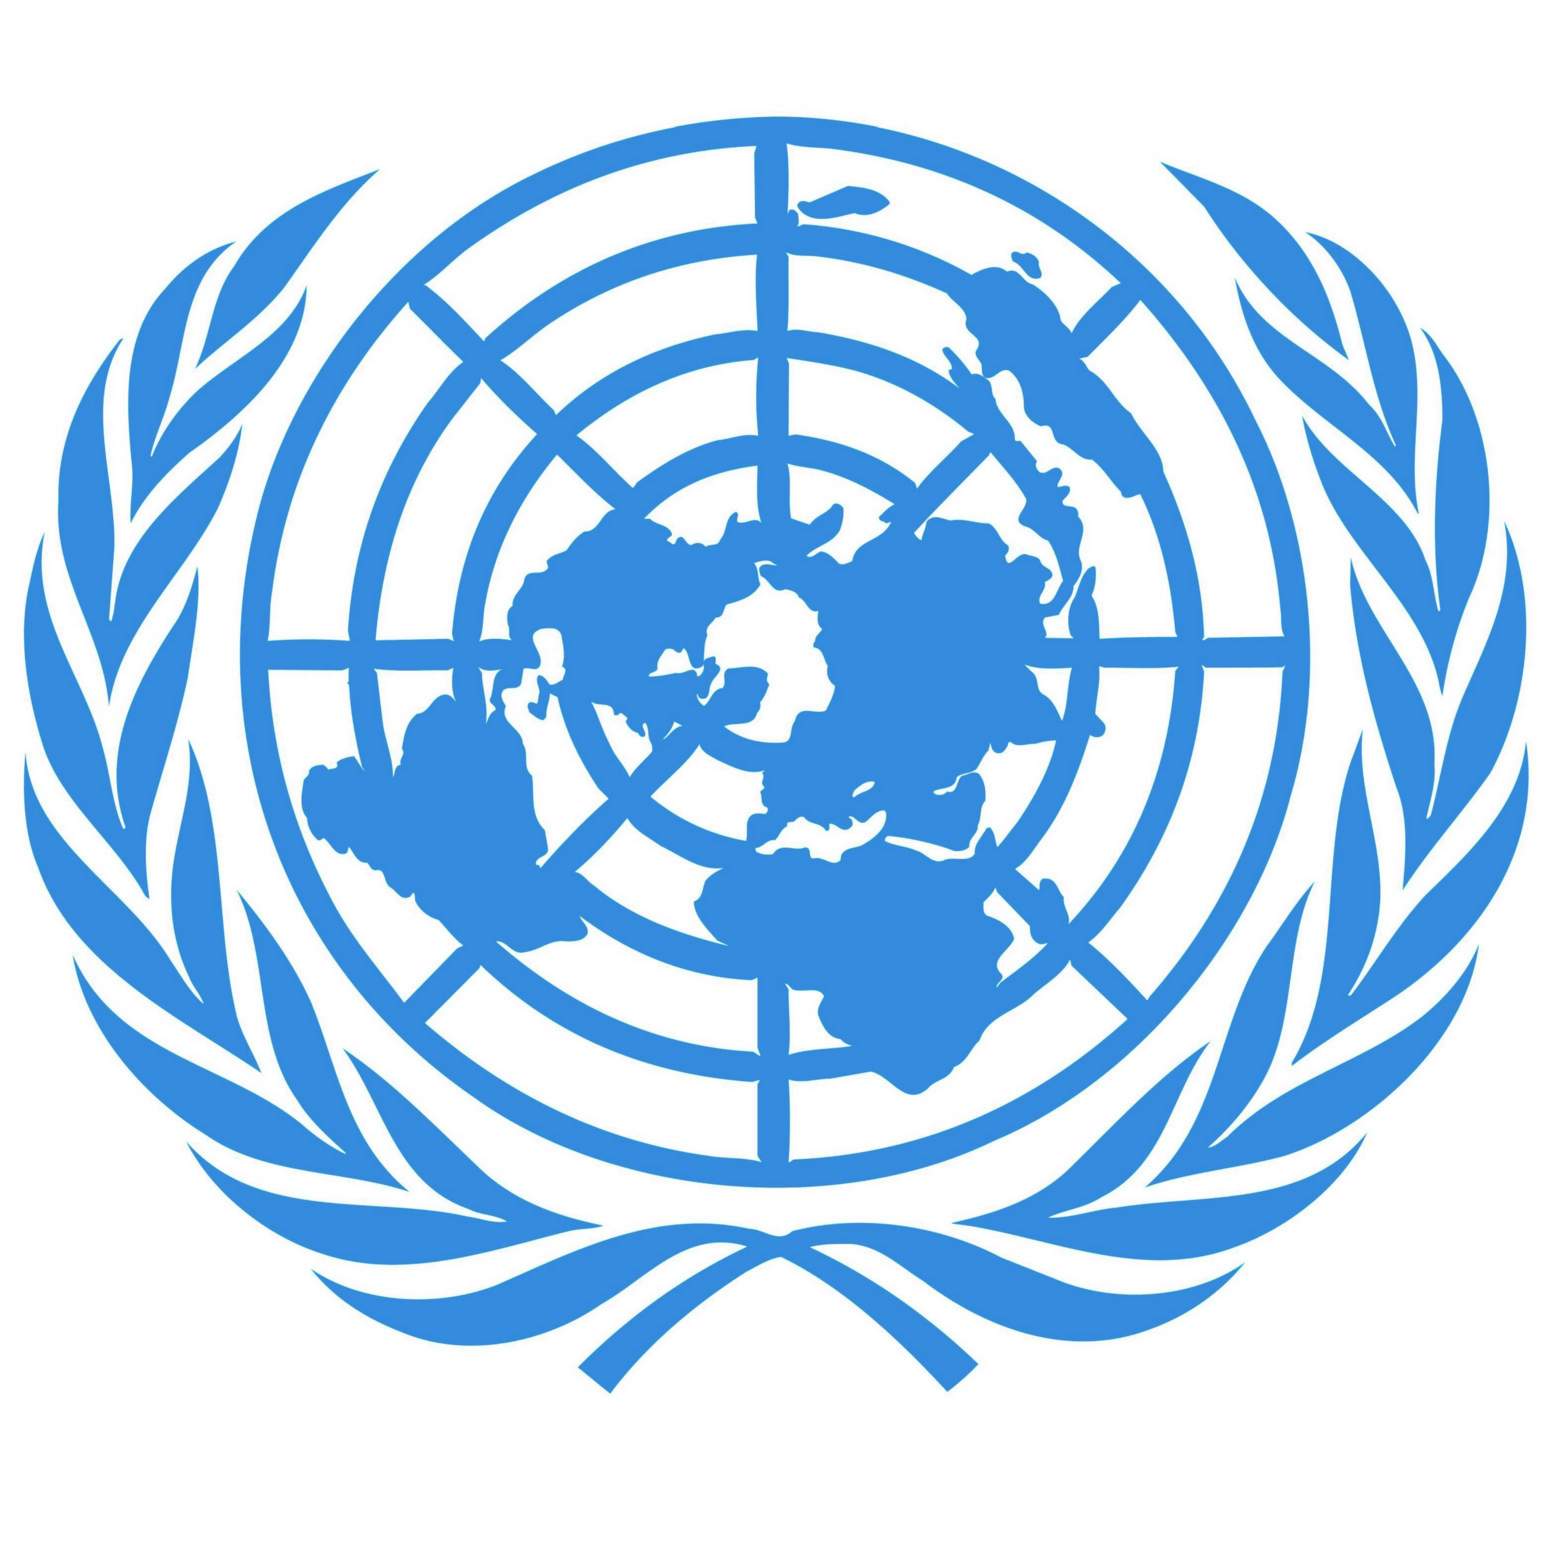 UN Emblem